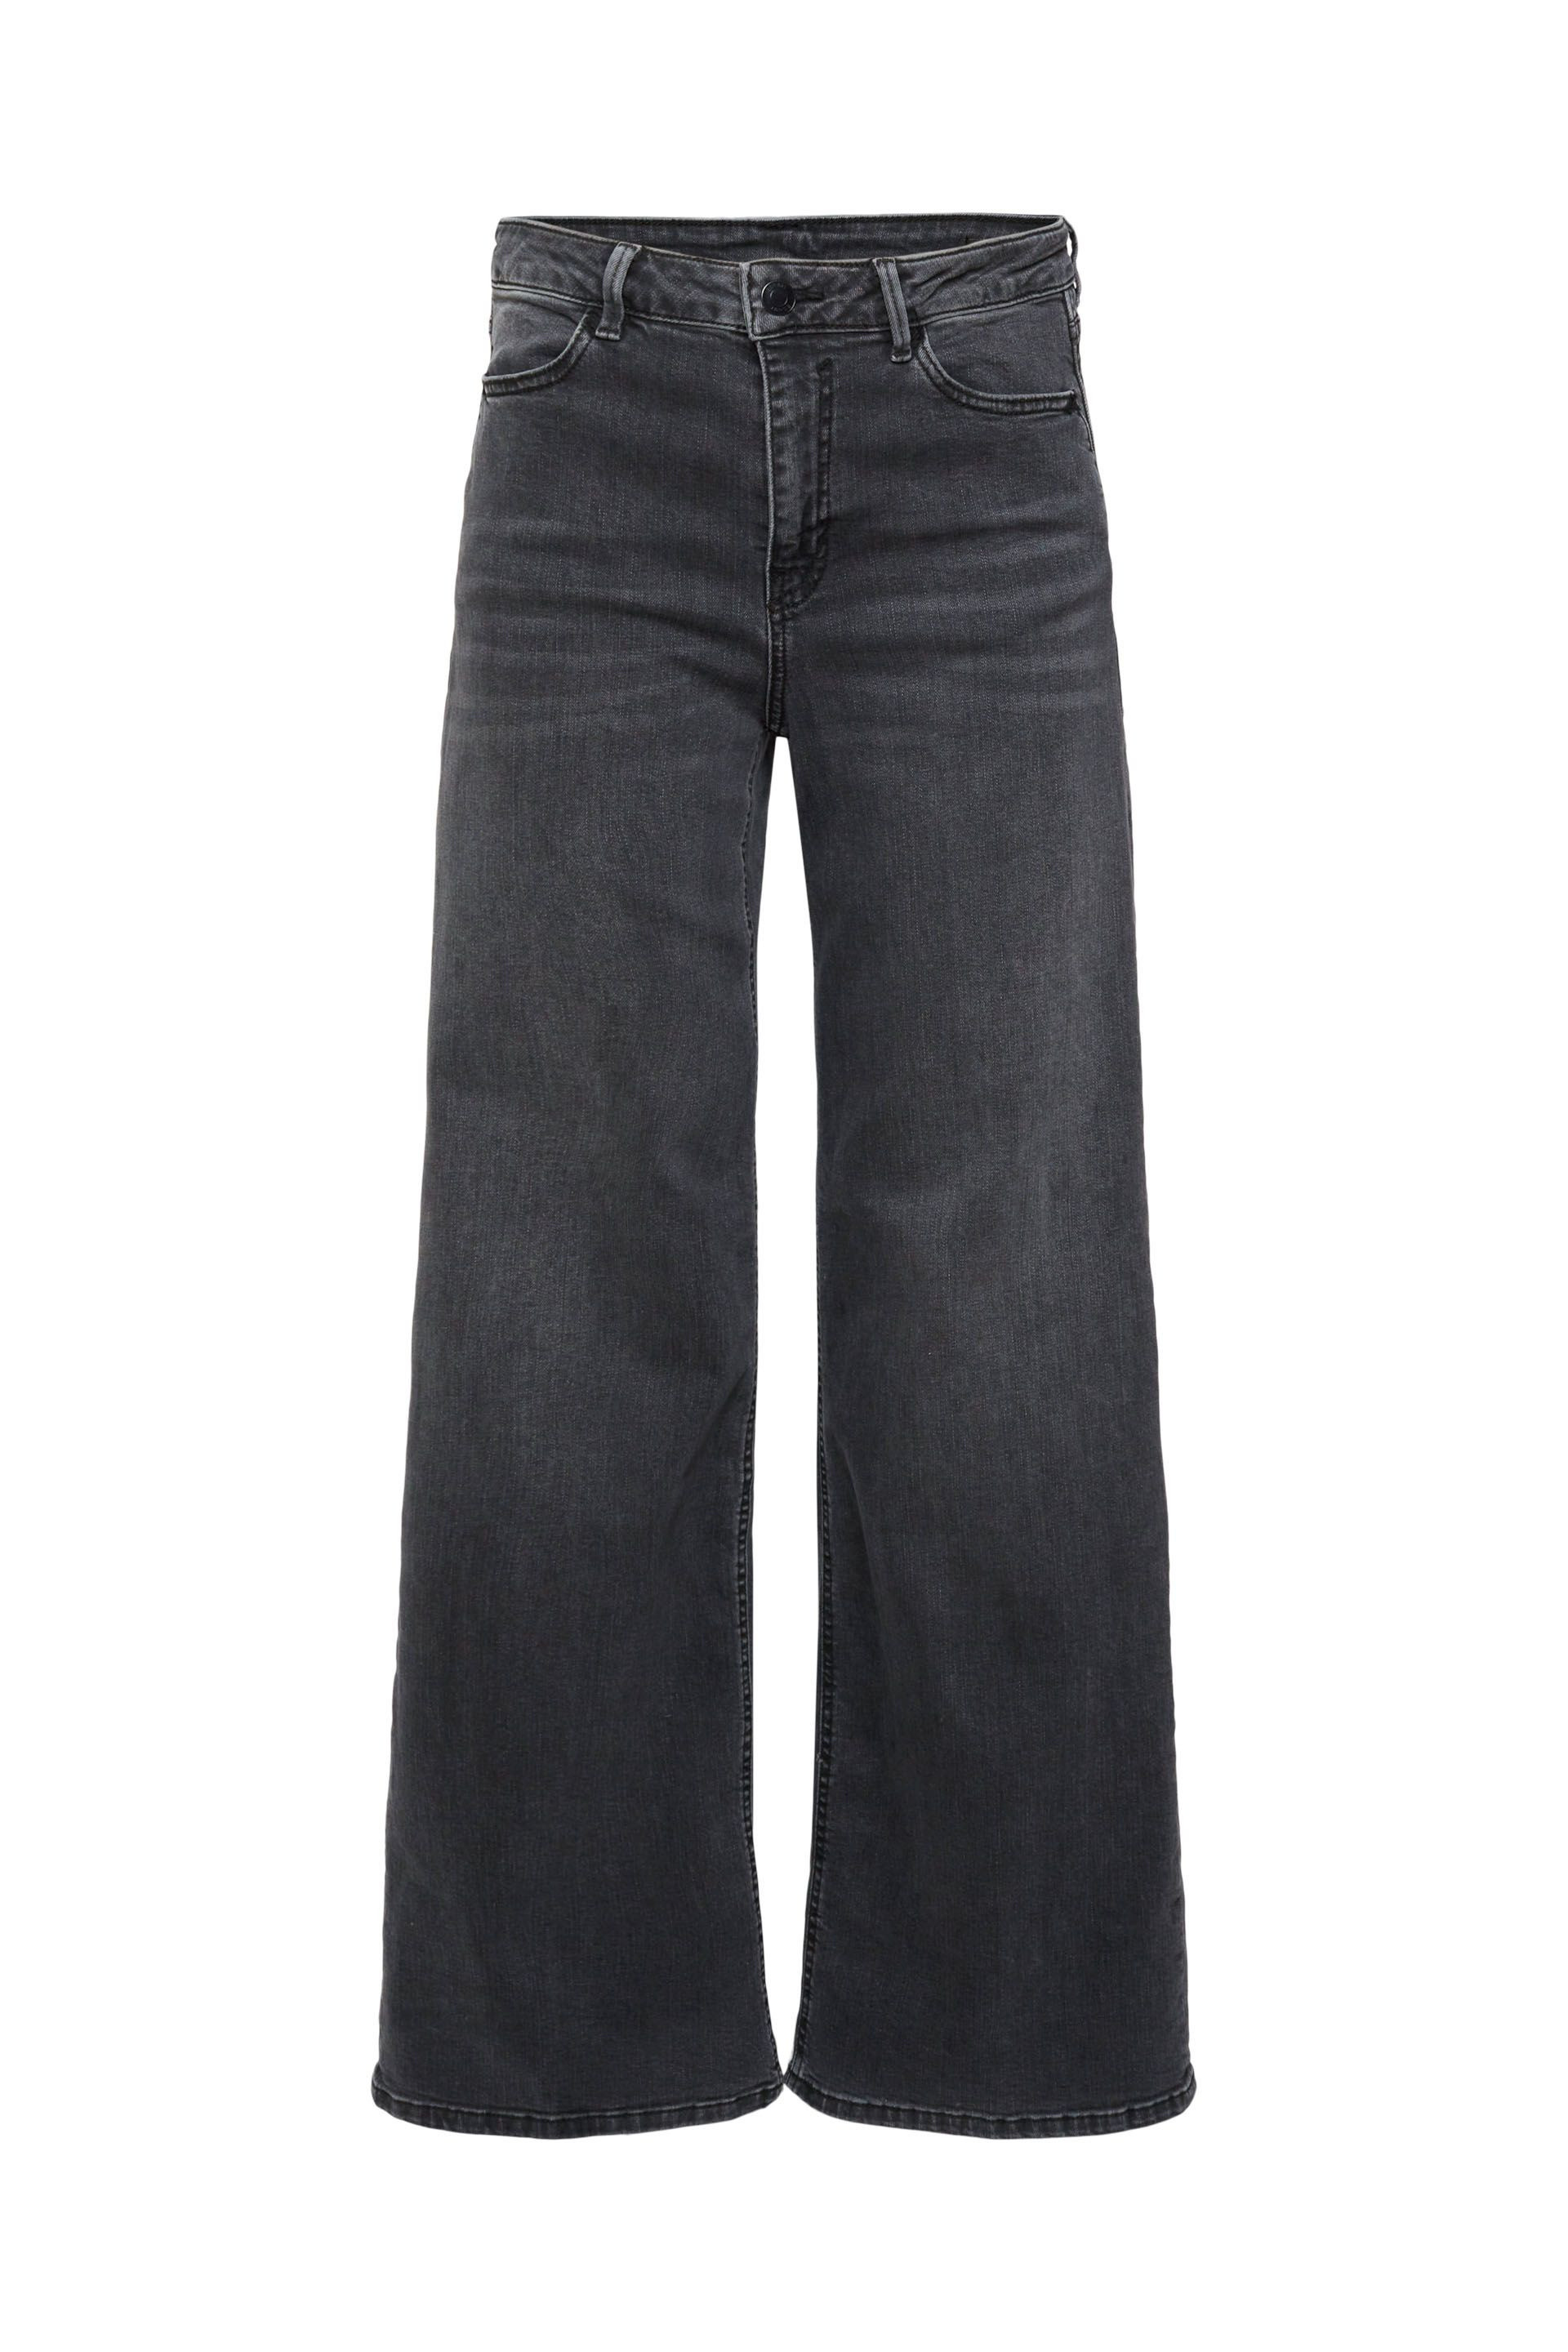 Esprit - Wide leg jeans, Black, large image number 0